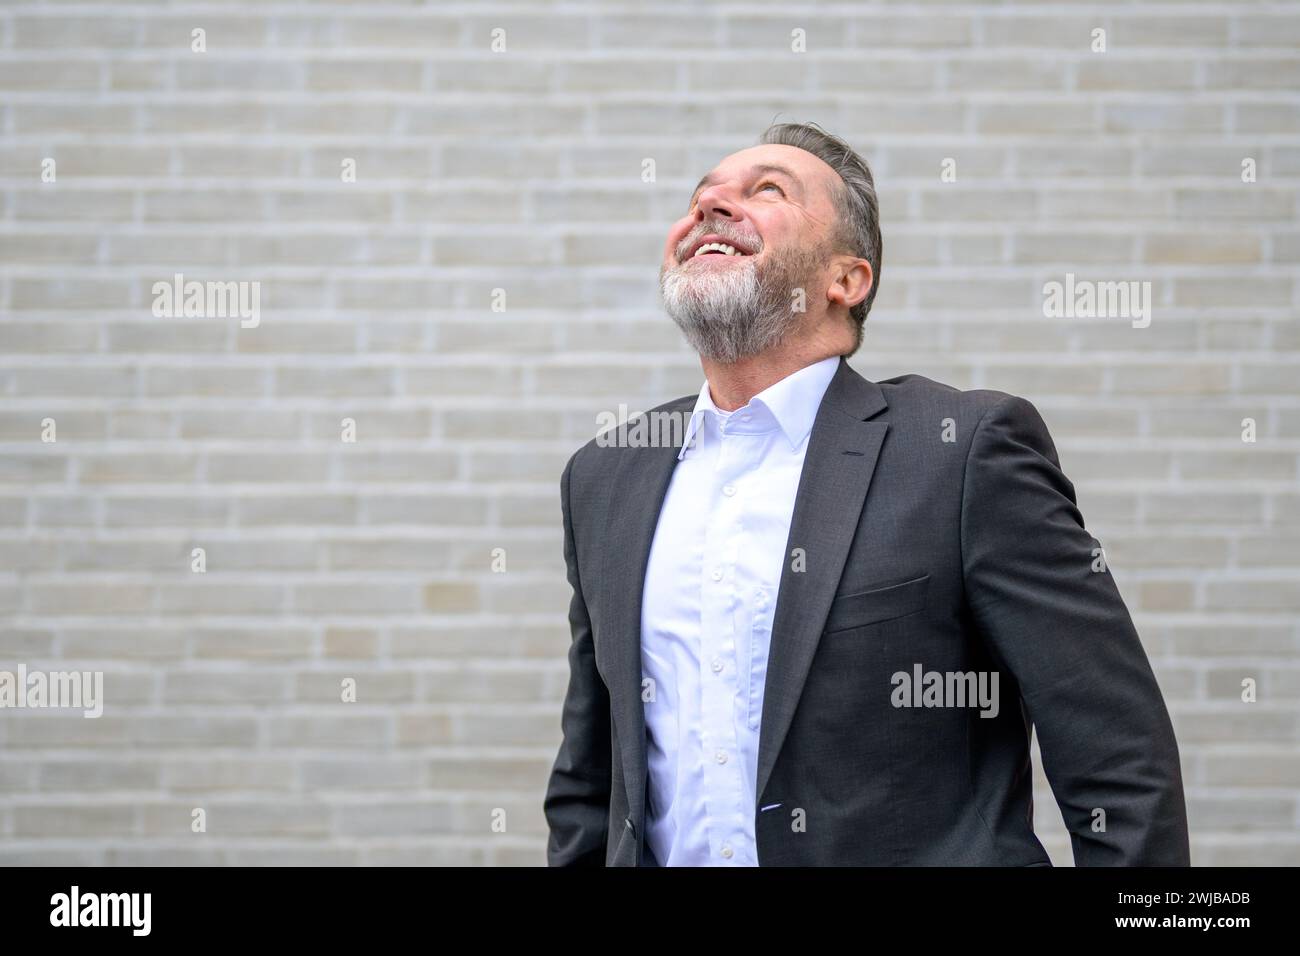 Attraktiver sechzigjähriger grauer Mann vor einer weißen Ziegelwand, der mit einem großen Lächeln aufblickt Stockfoto